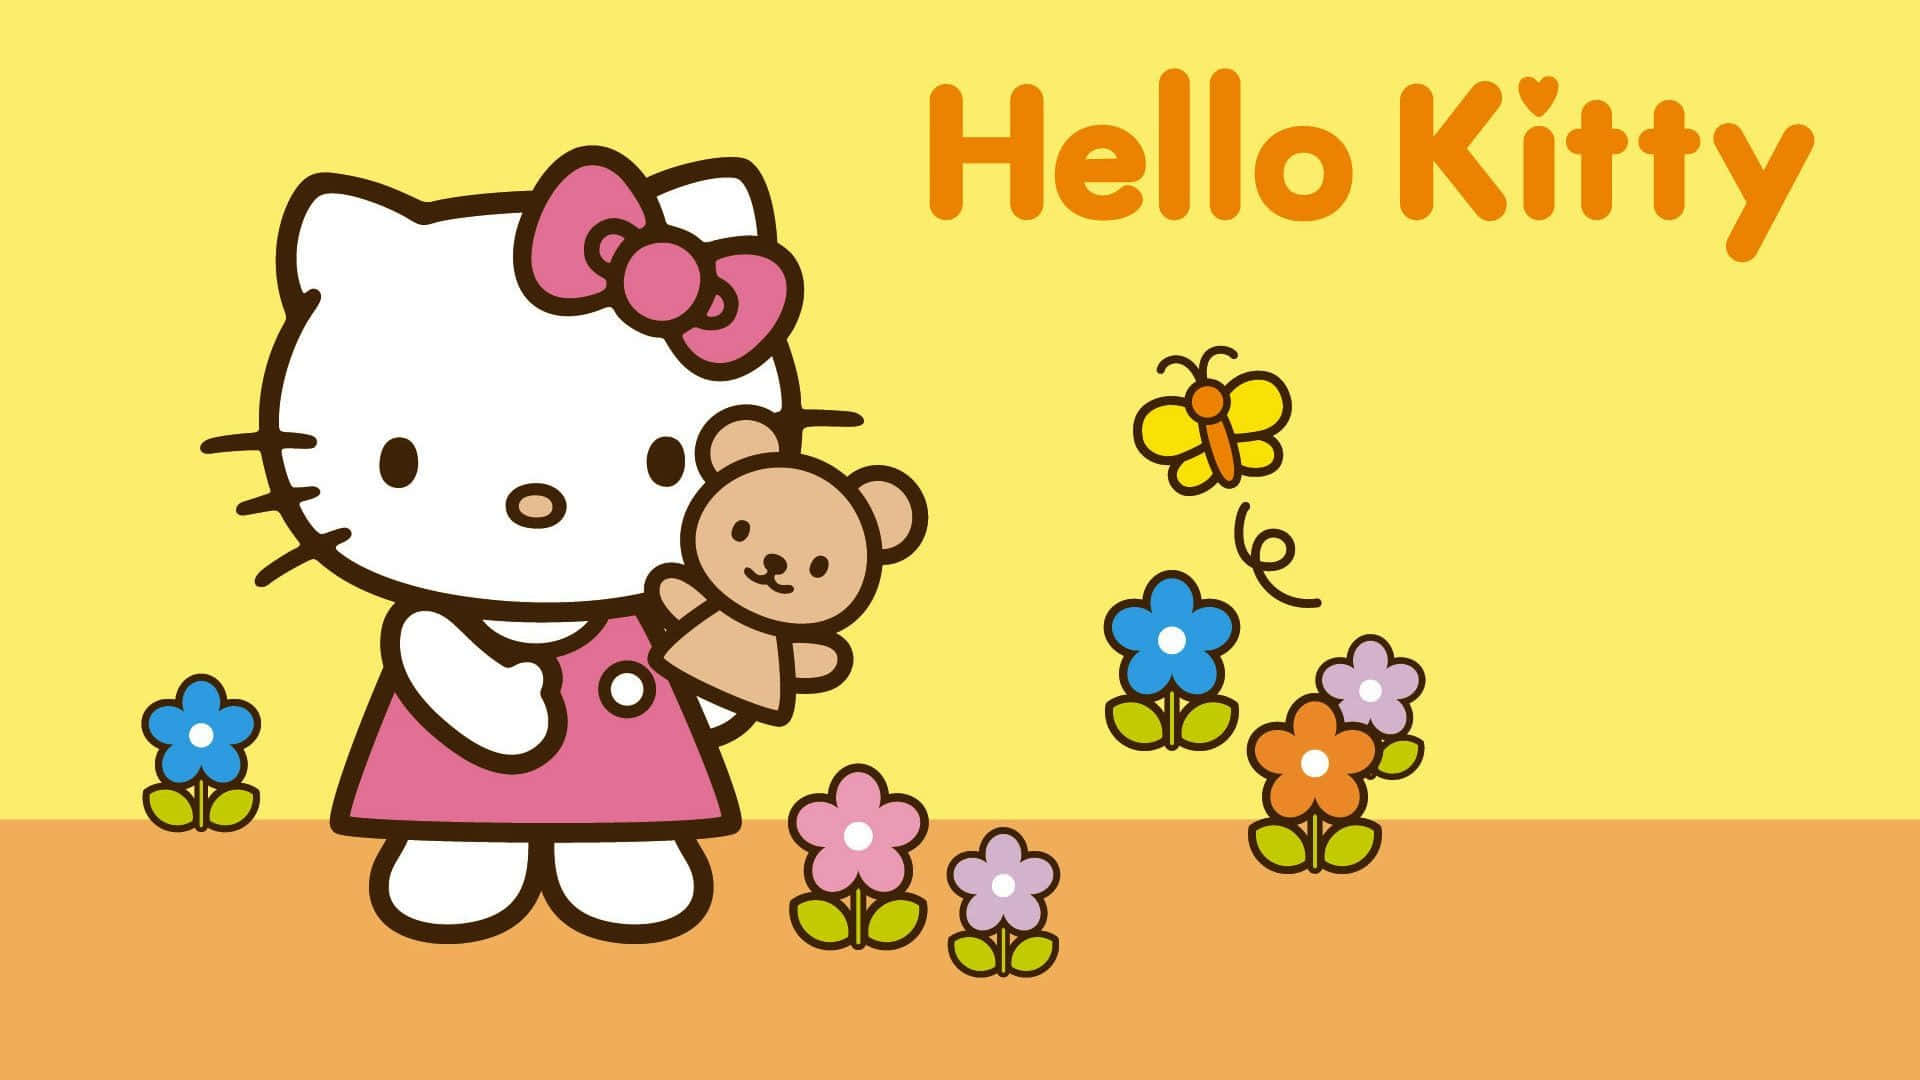 Celebrael Día De Acción De Gracias Con Hello Kitty Fondo de pantalla